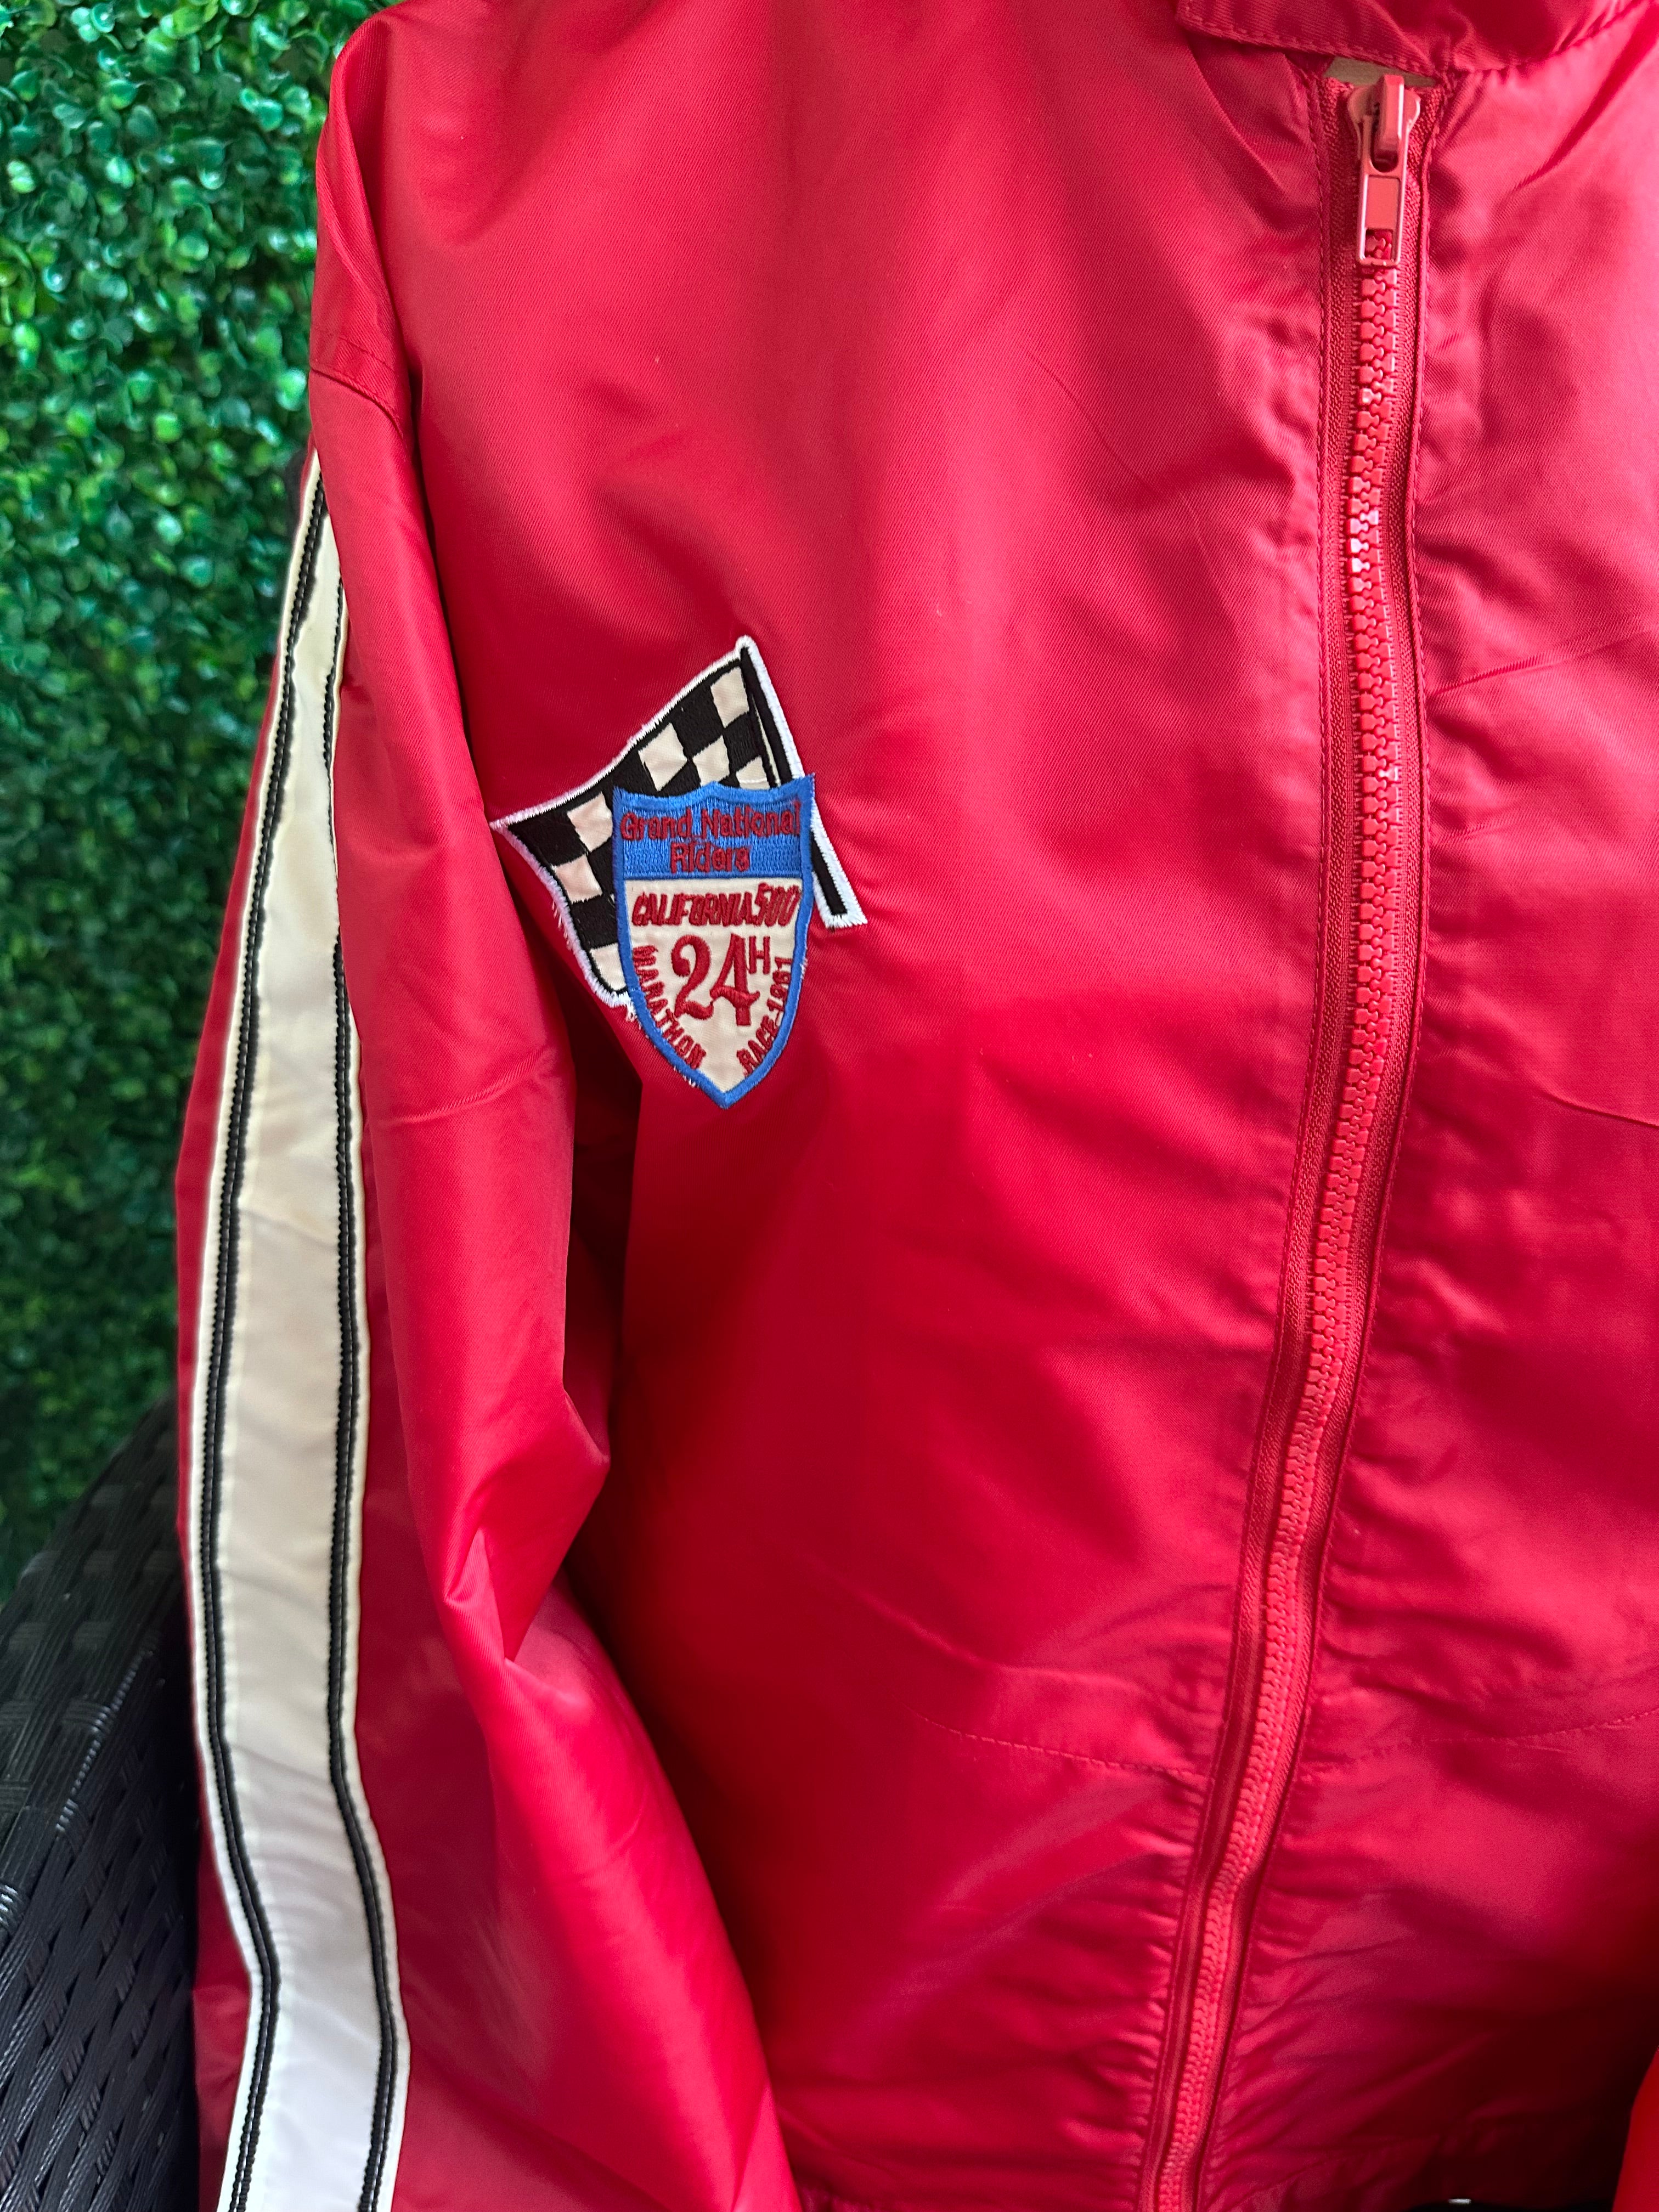 Von Dutch Originals Nylon Red Sport Race Car Jacket Bike Windbreaker Patches